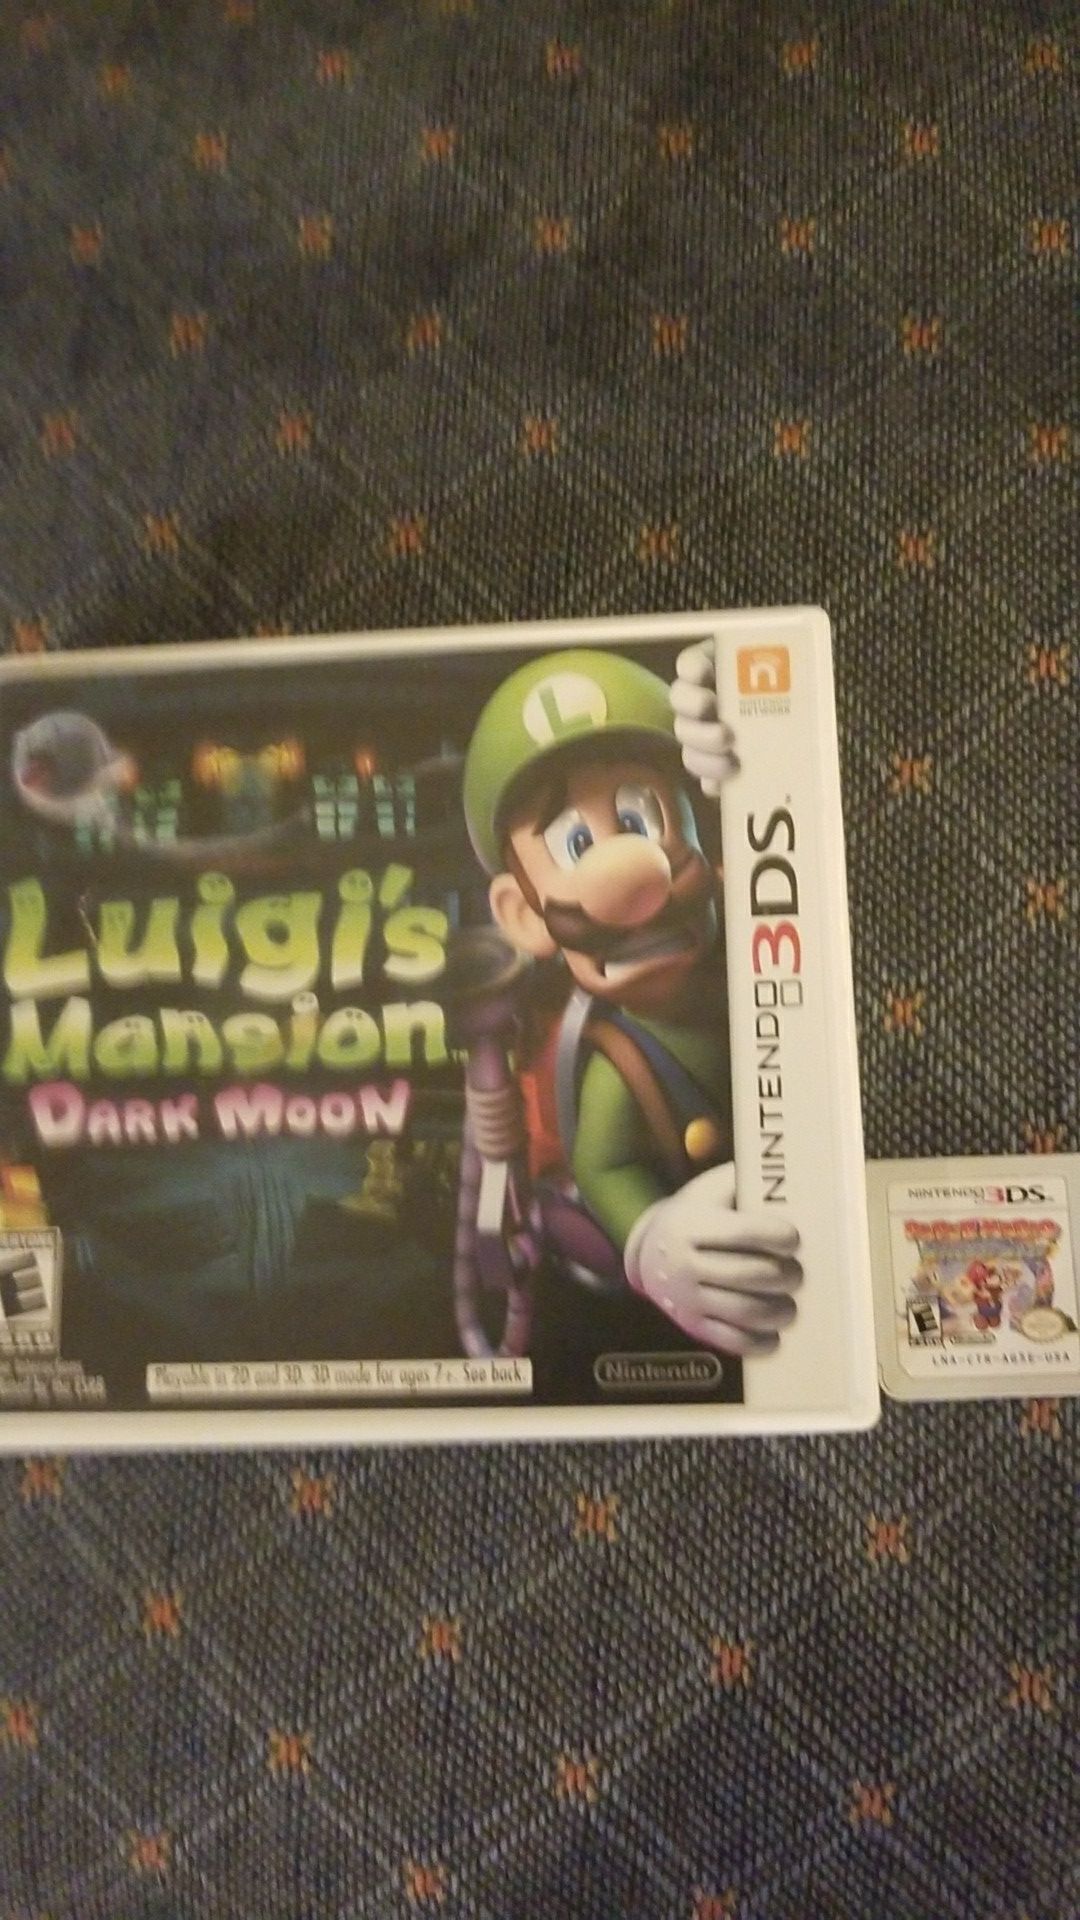 NINTENDO 3DS games. "Luigis mansion dark moon" and "paper mario sticker star"$40 each or best offer